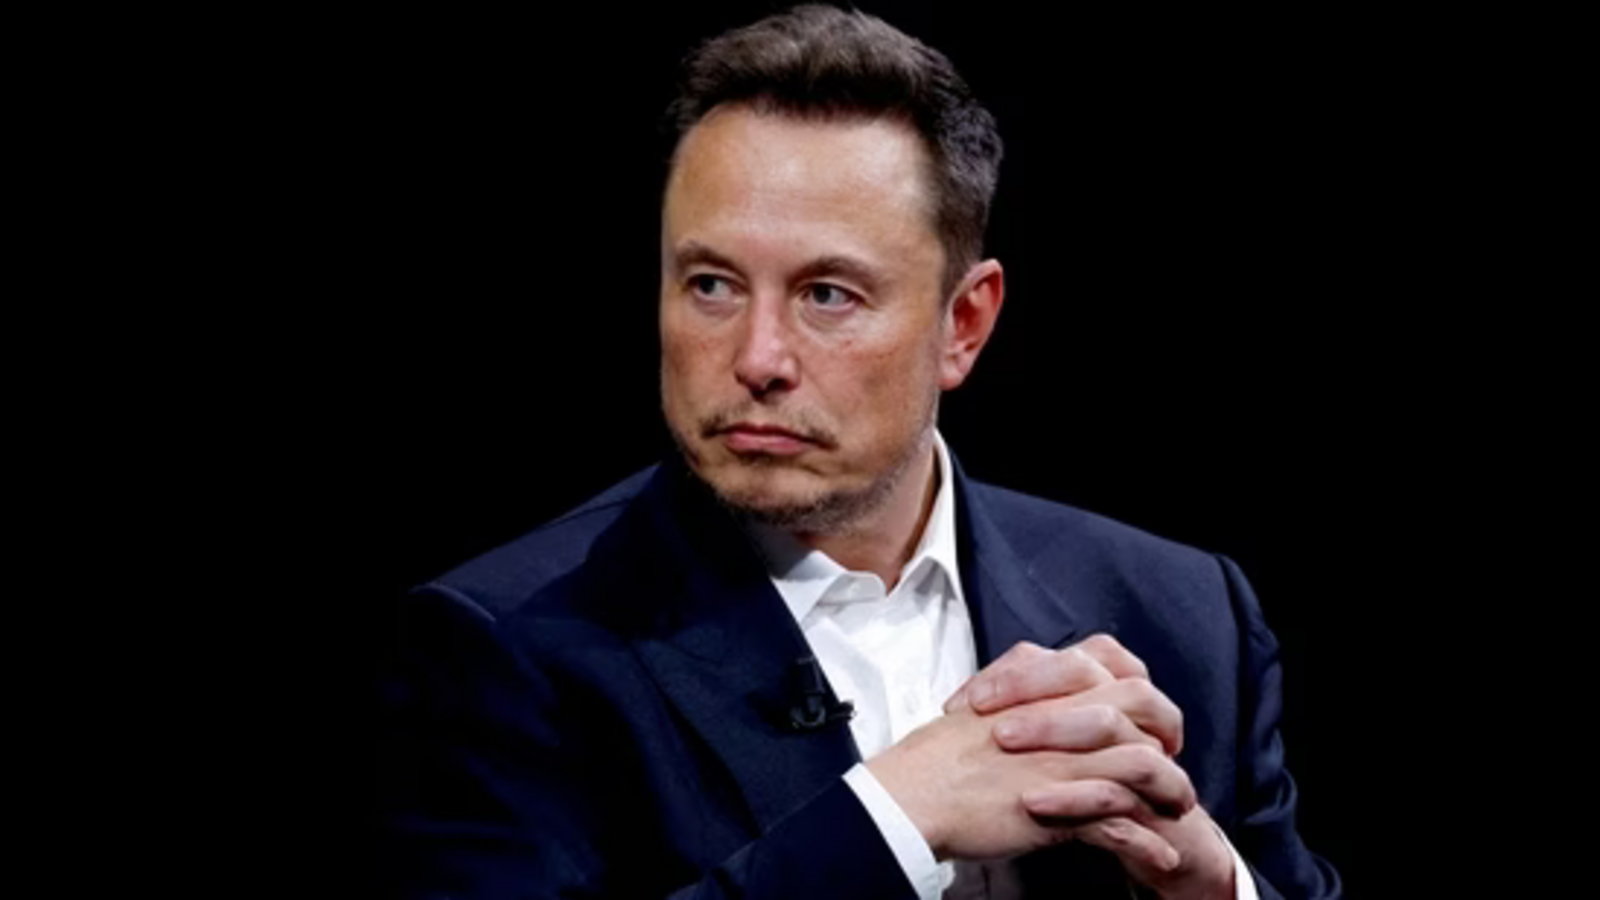 Elon Musk  ve OpenAI Arasında Dava'ya Giden Anlaşmazlık!